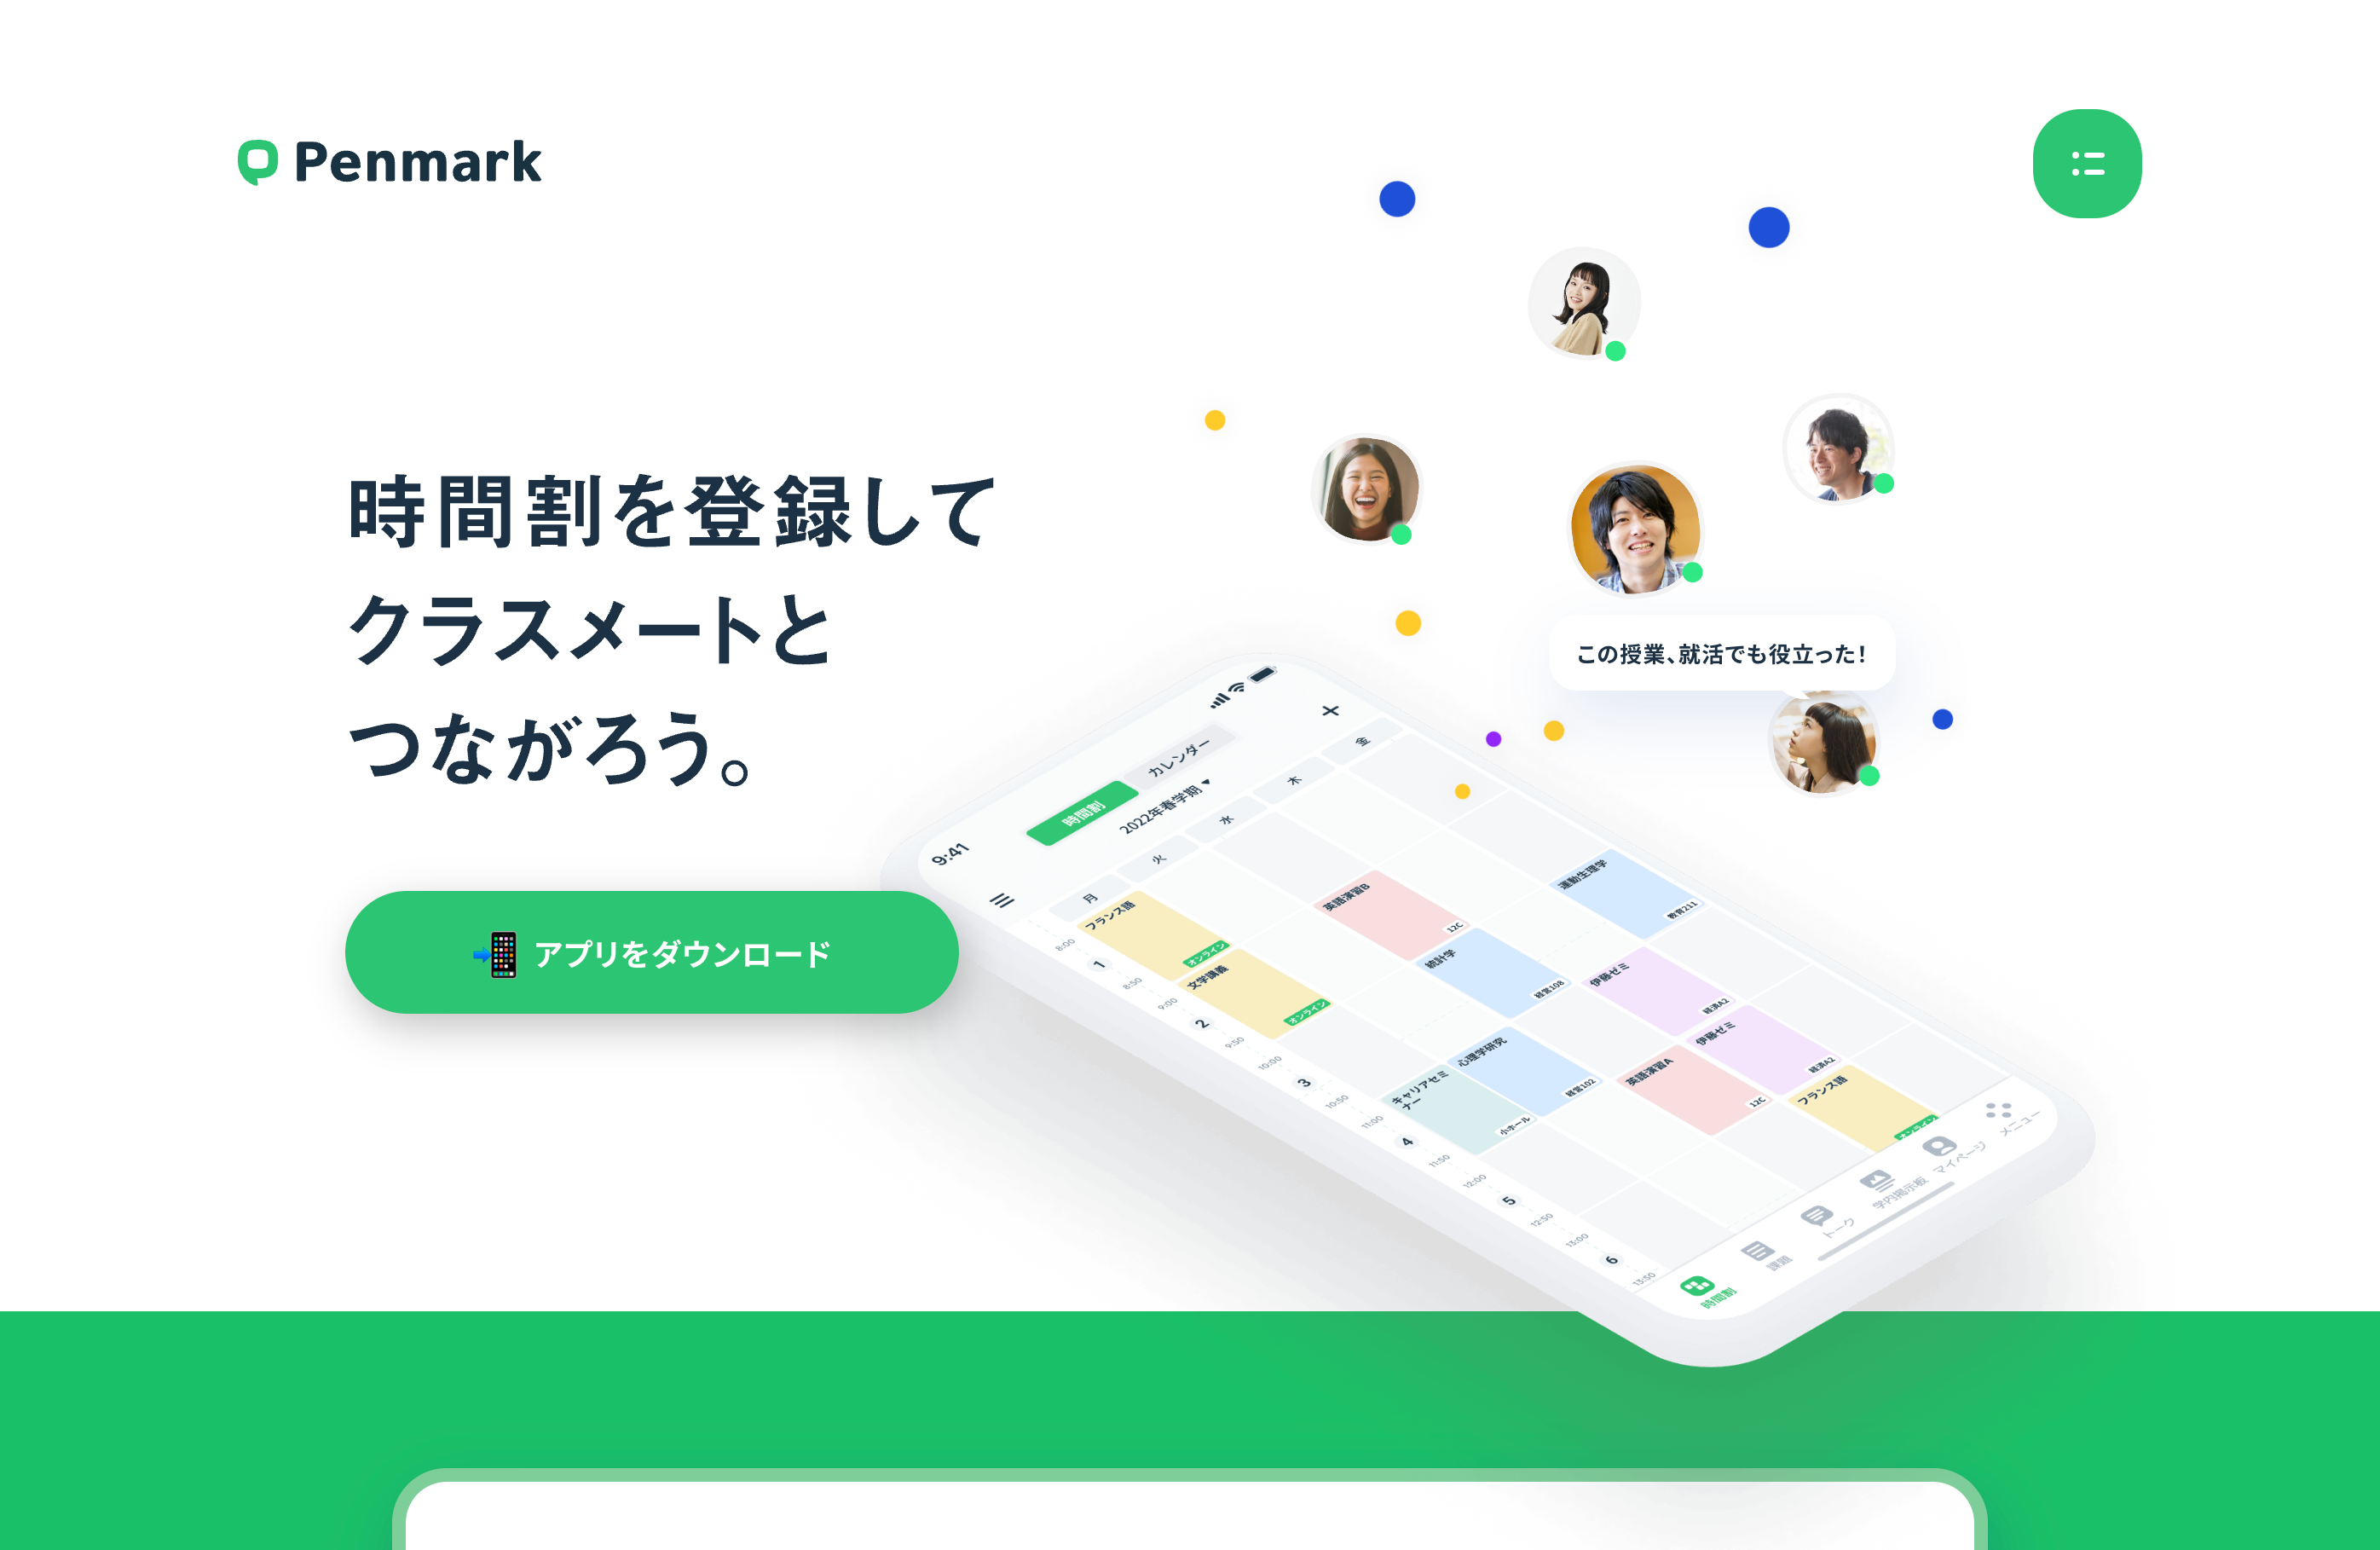 時間割アプリ「Penmark」- 大学生のための履修管理SNS - penmark.jp